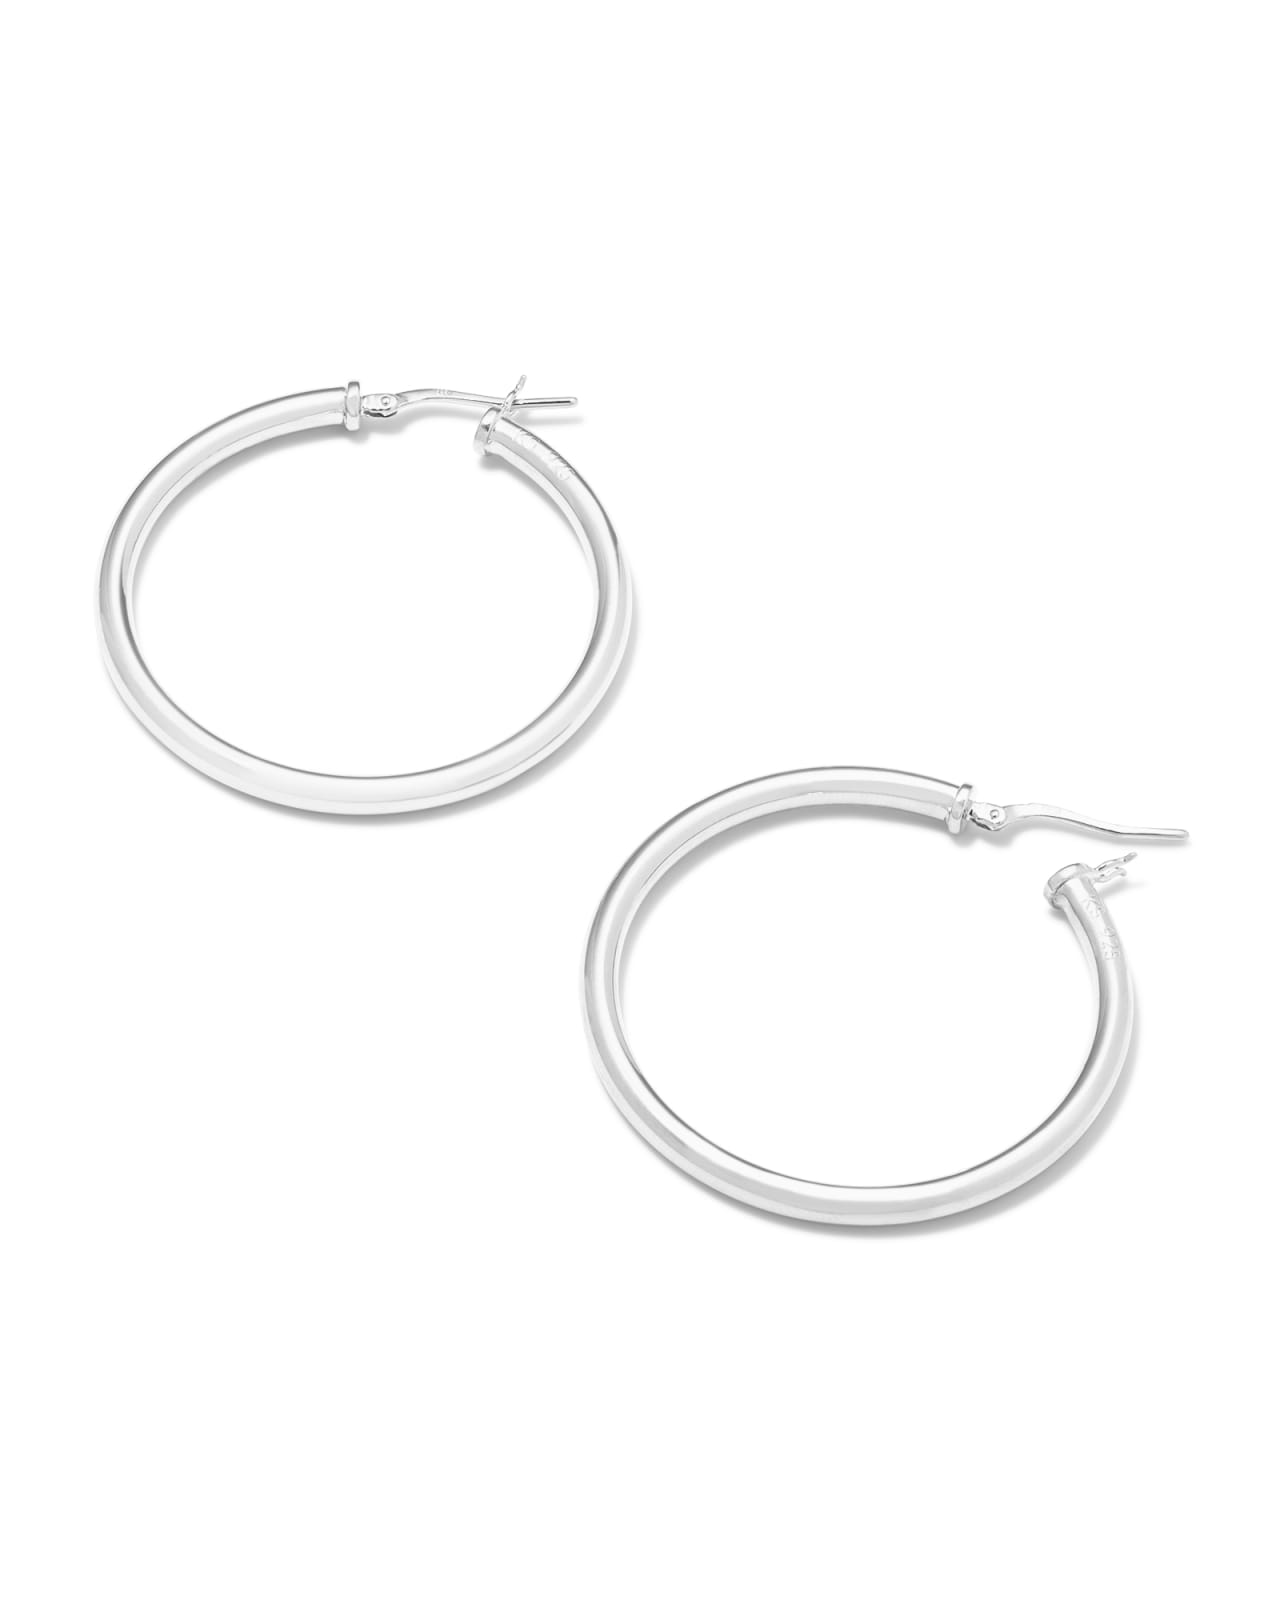 40mm Sterling Silver Hoop Earrings